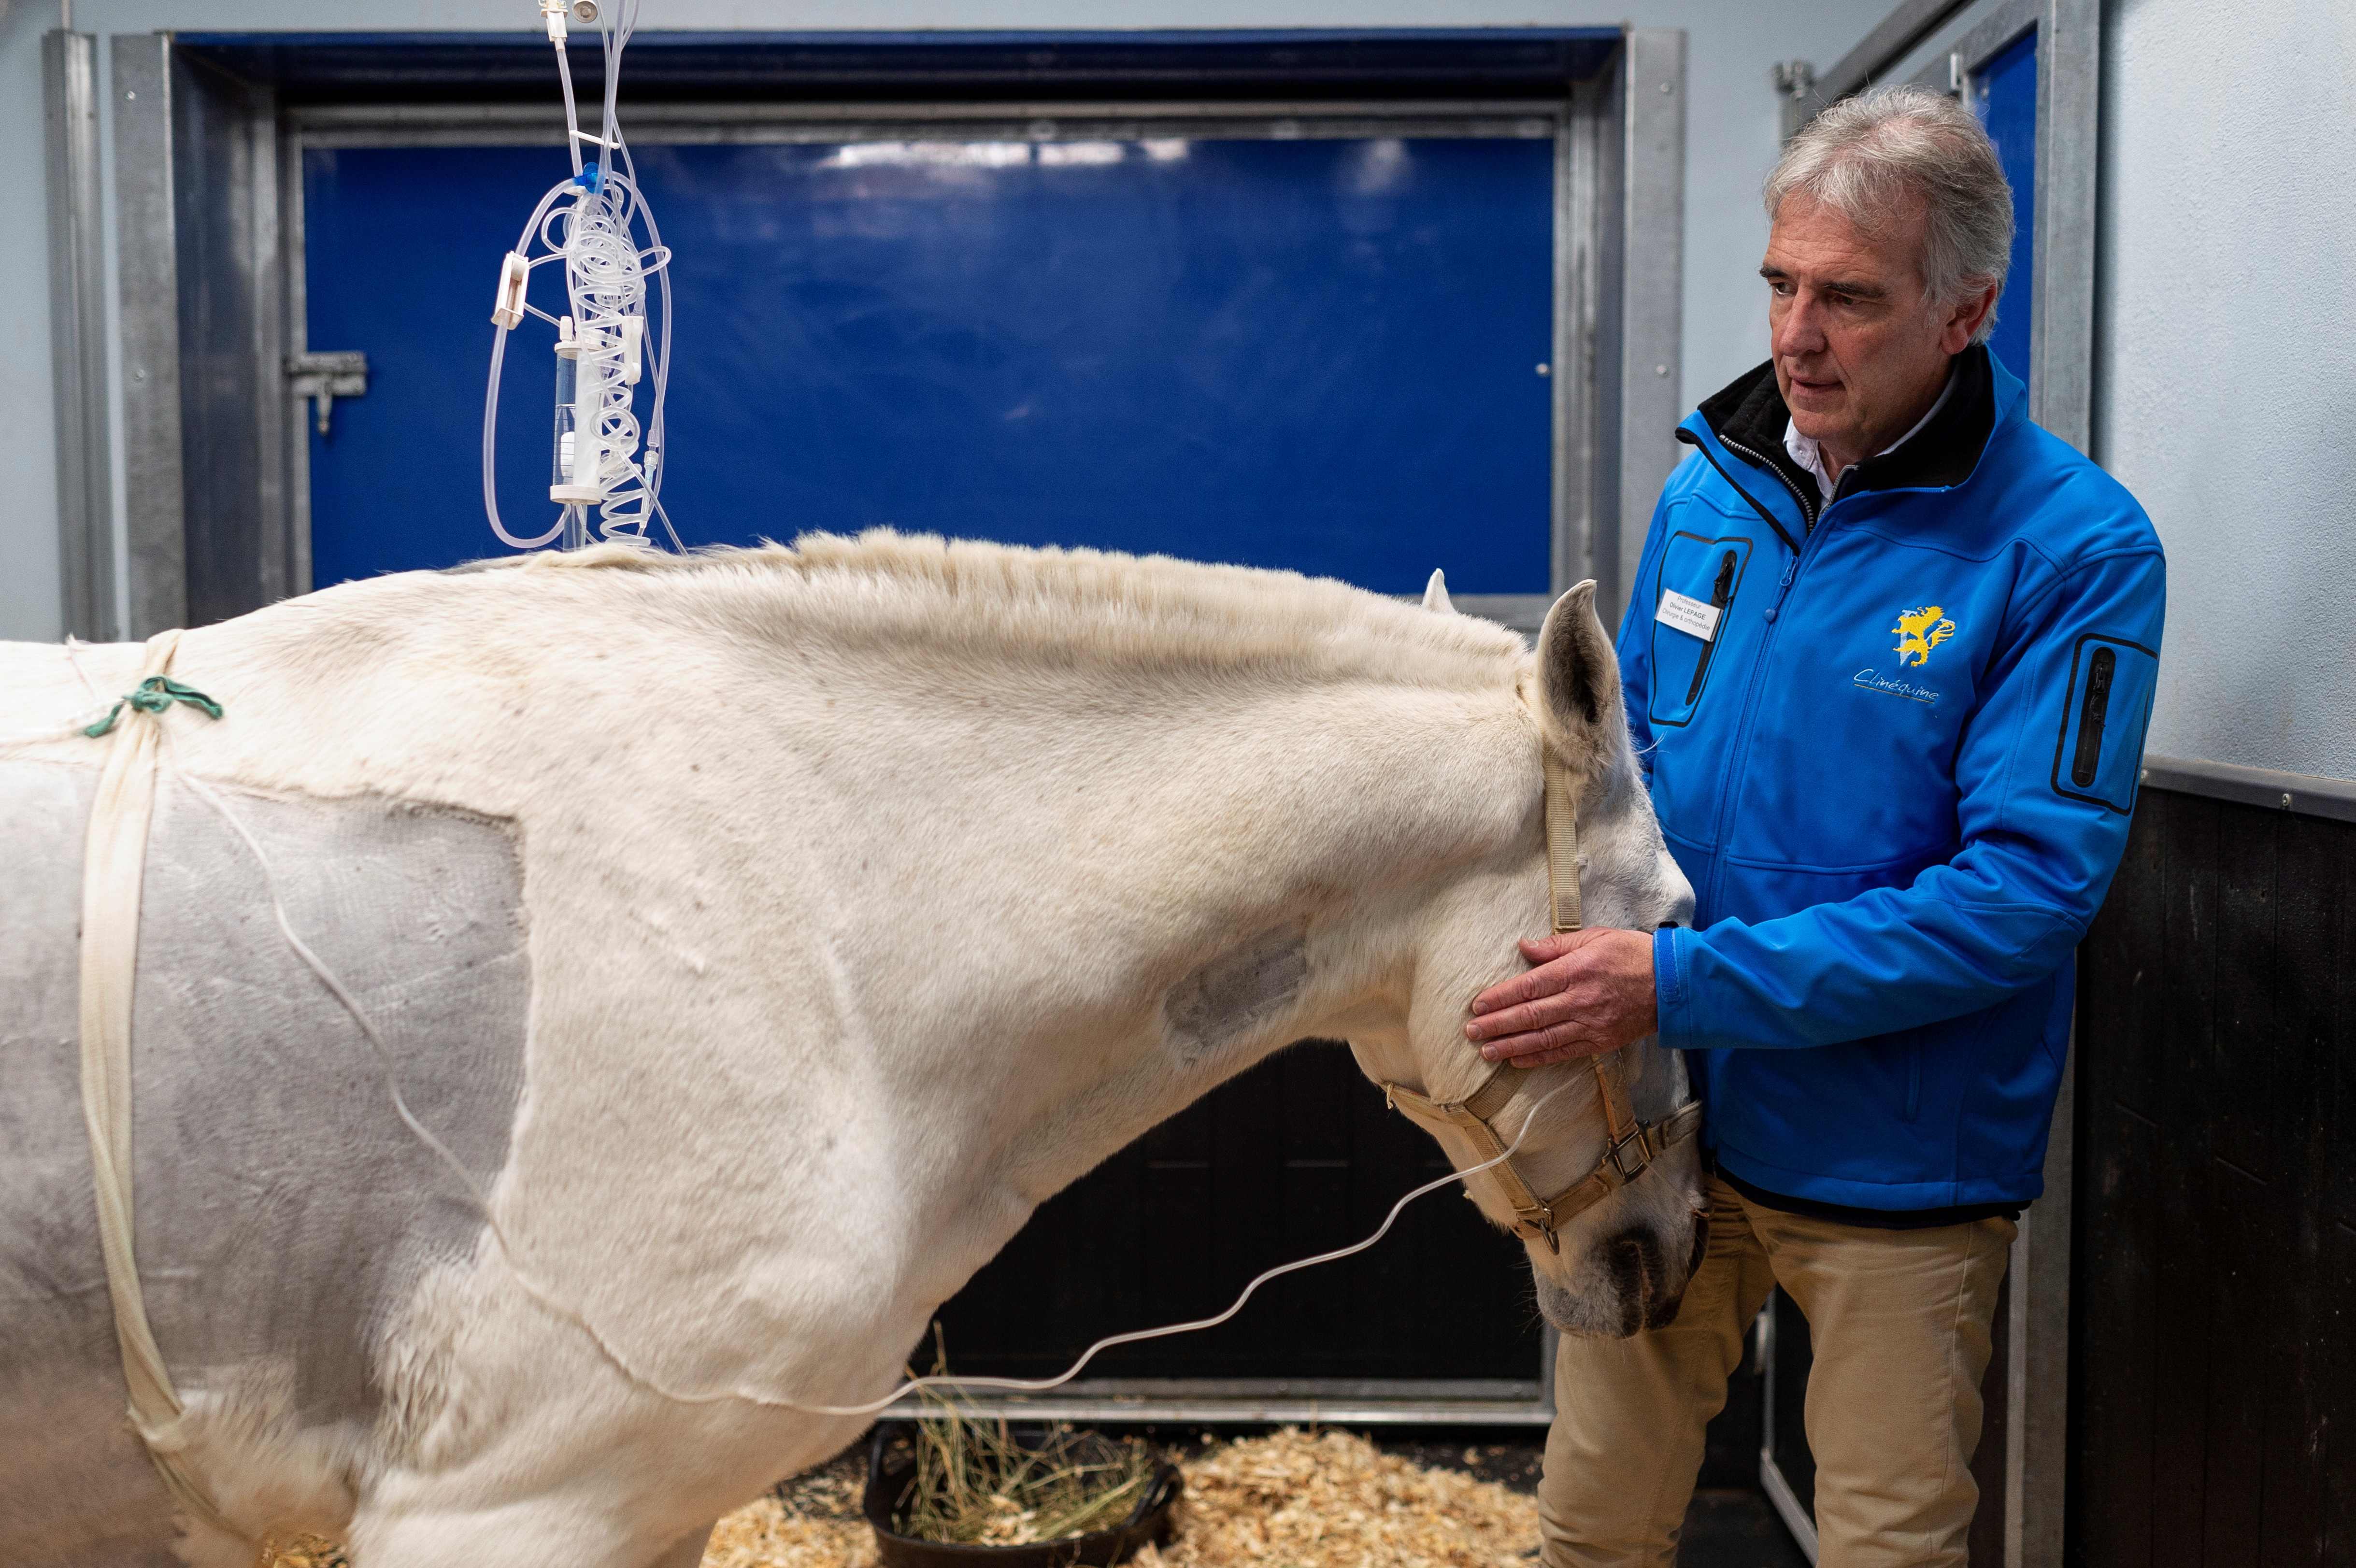 Algunos de los caballos tratados están valorados entre €3 y €4 millones. (Foto Prensa Libre: AFP)